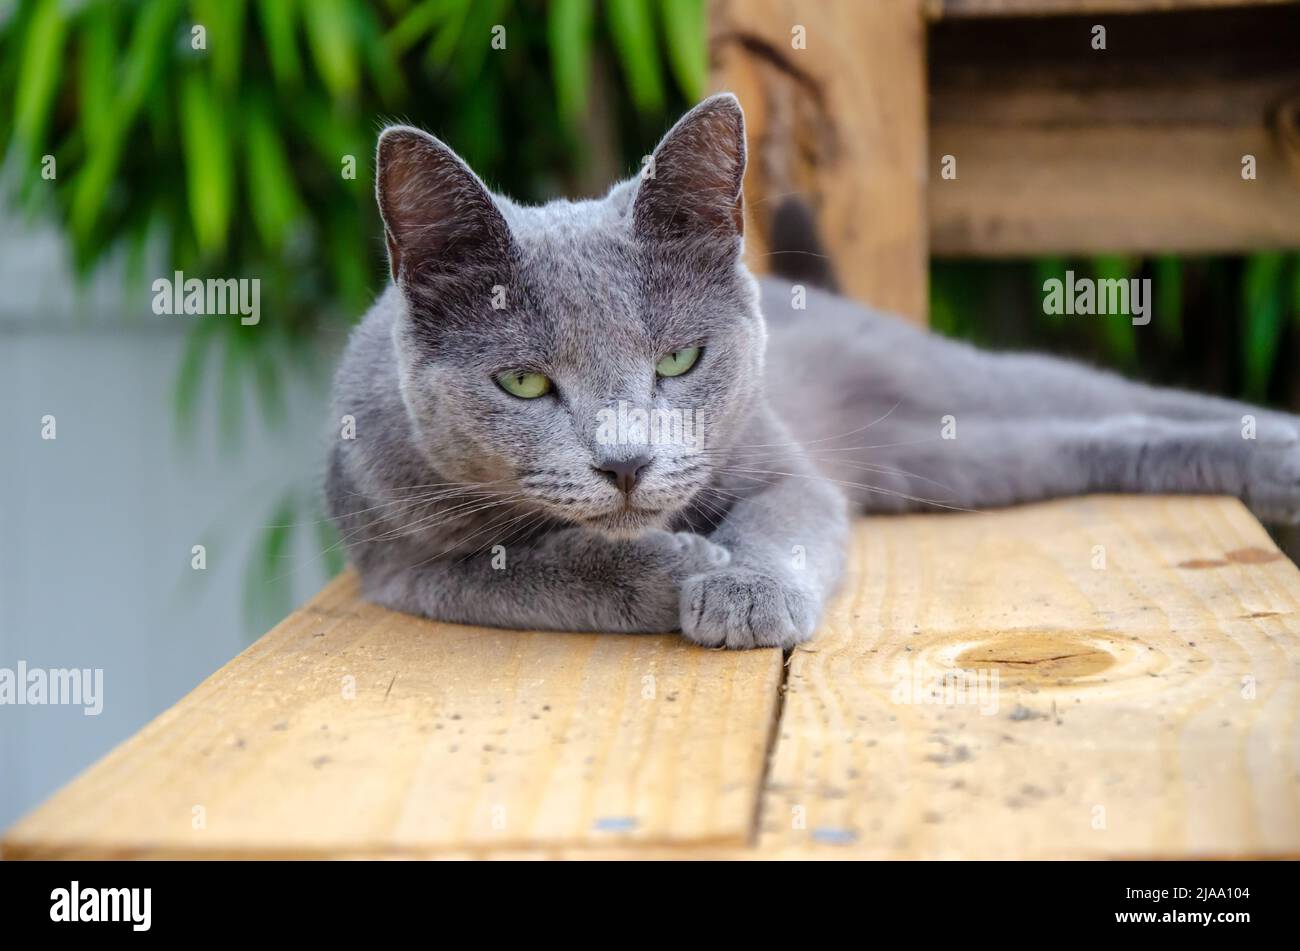 Russe Blue Grey Cat extérieur Sleepy / Judgy / non amusé, plate-forme en bois, jour à l'extérieur Banque D'Images